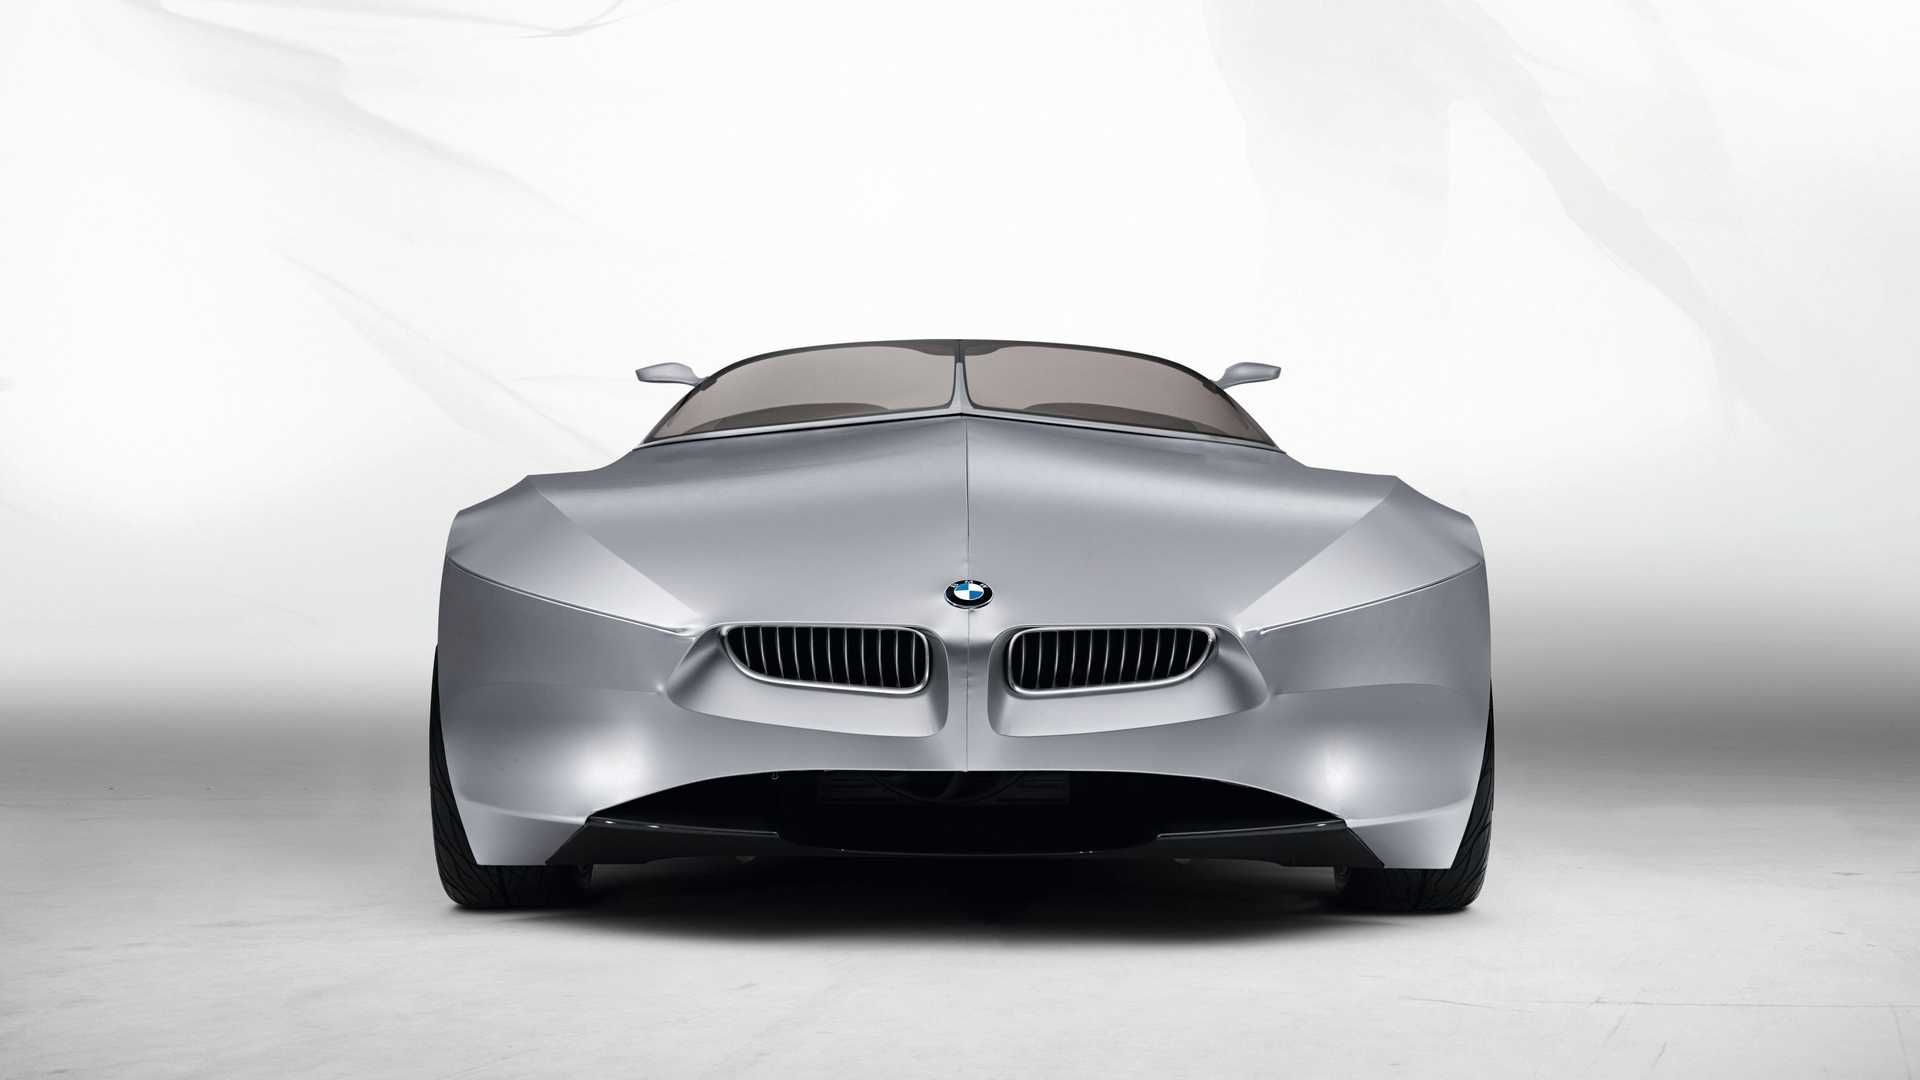 مرجع متخصصين ايران نماي جلو خودروي مفهومي روباز بي ام و گينا / BMW GINA concept convertible